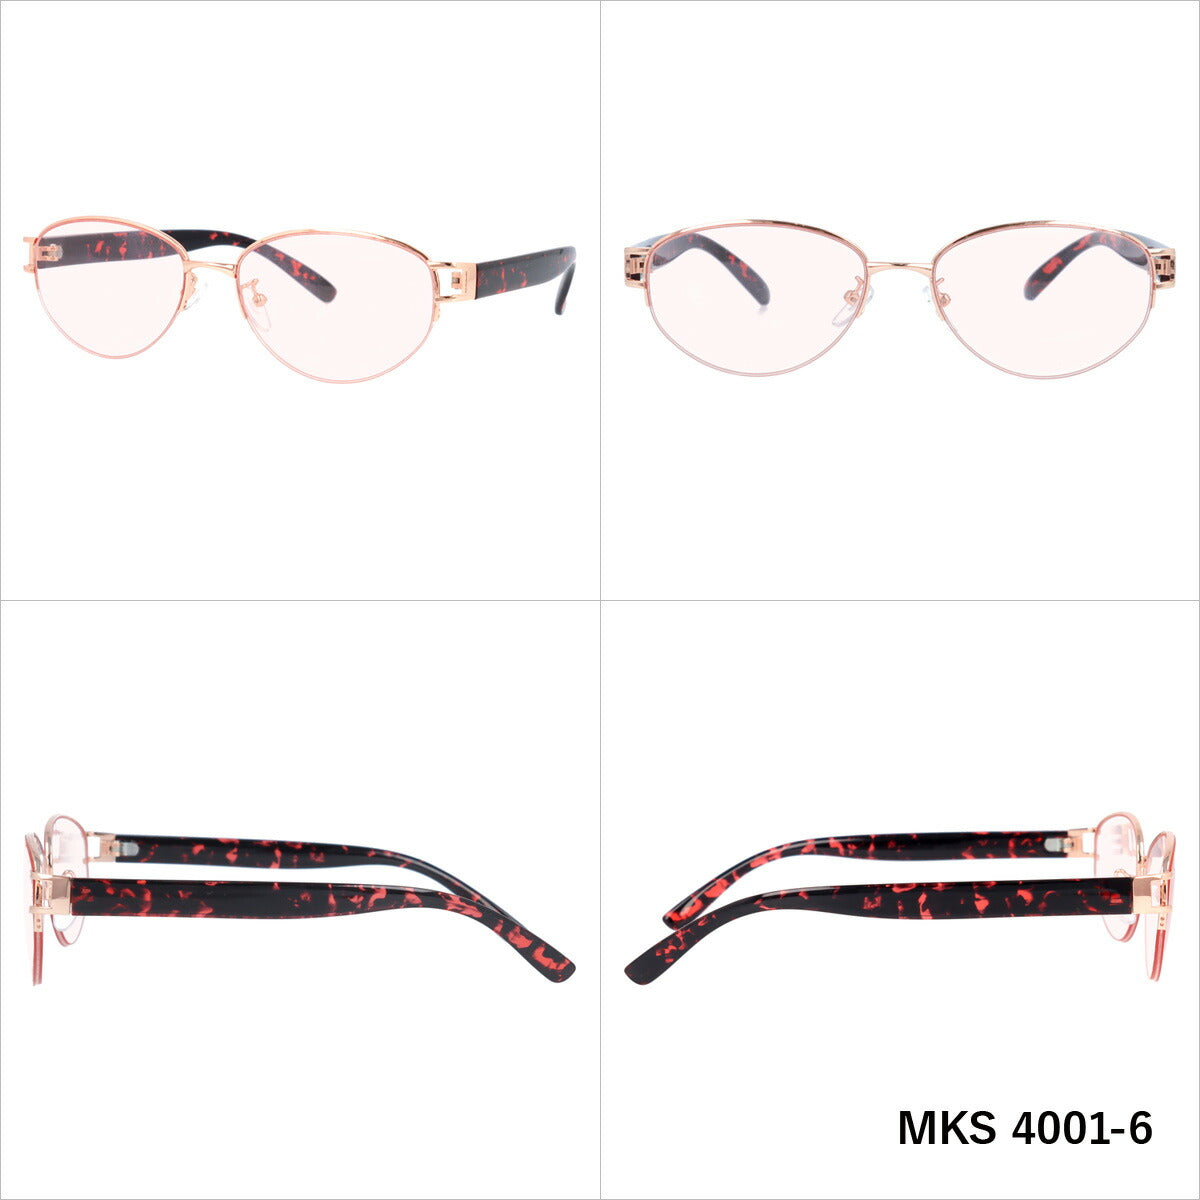 マシューキョウト サングラス mashu KYOTO MKS 4001 全6カラー 55サイズ オーバル型 ユニセックス メンズ レディース UVカット 紫外線 カラーサングラス ブランド 人気 定番 ラッピング無料